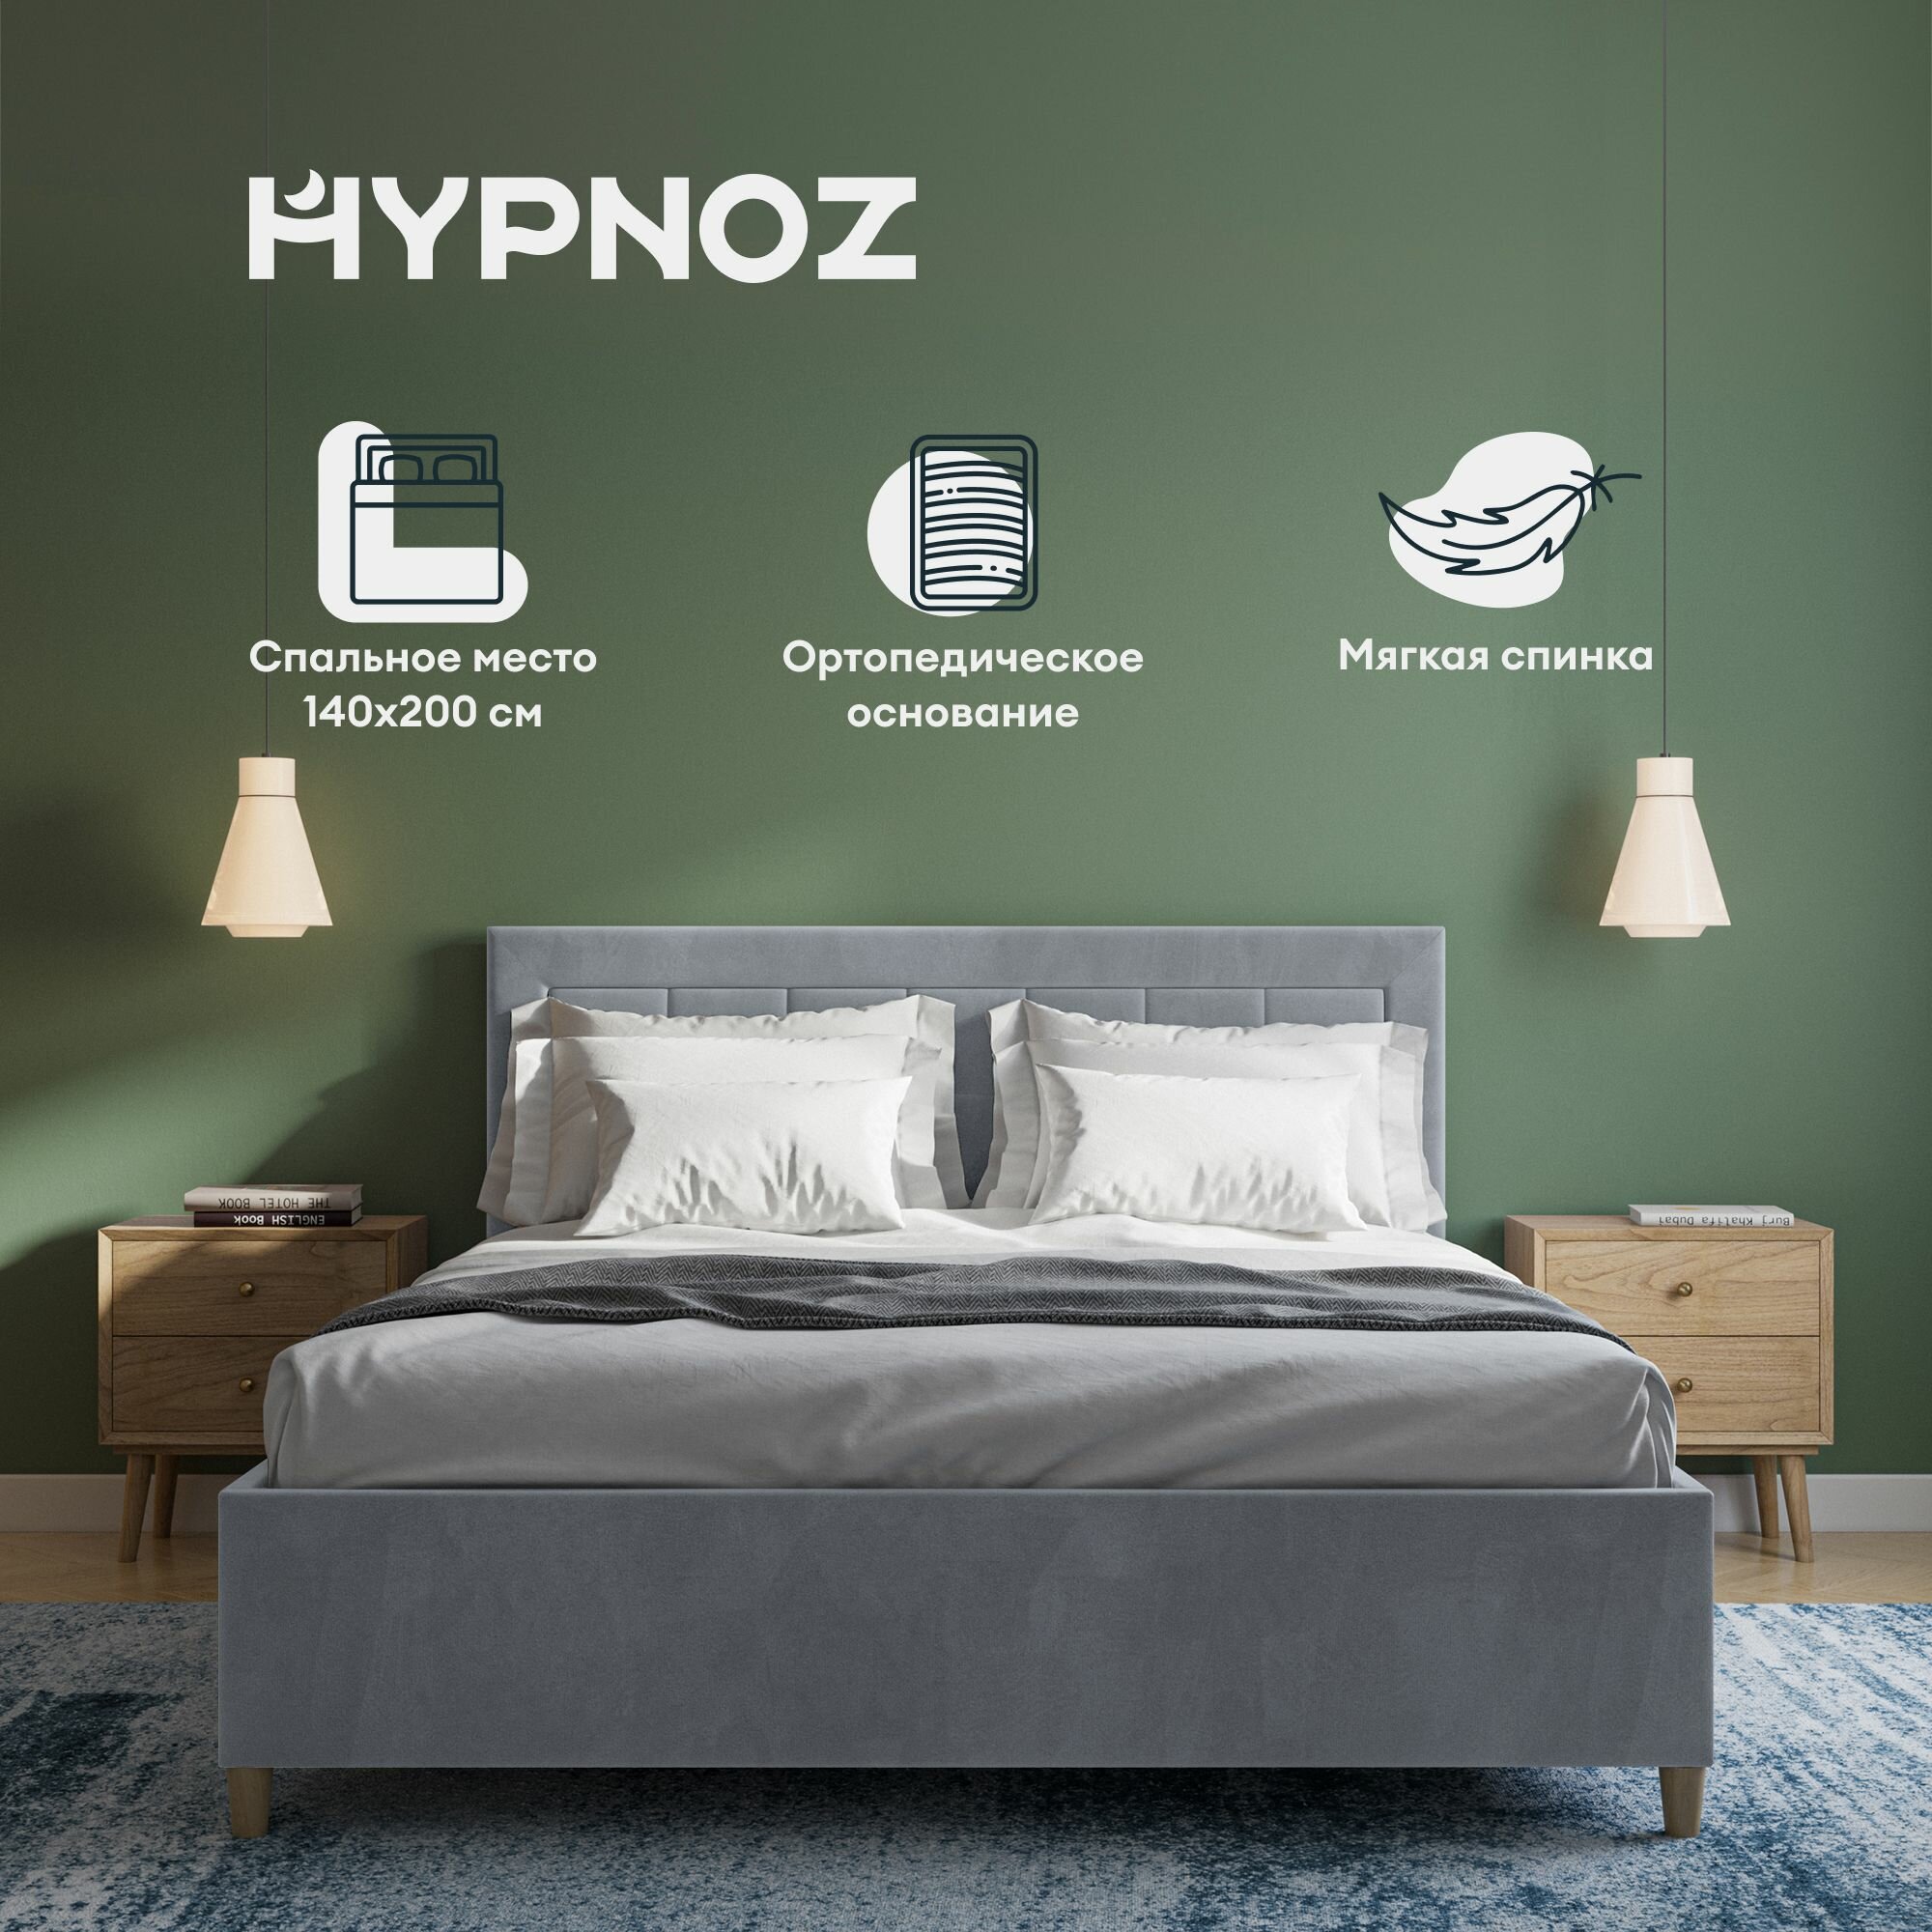 Кровать HYPNOZ Almeria 200x140, с подъемным механизмом, Светло-серая